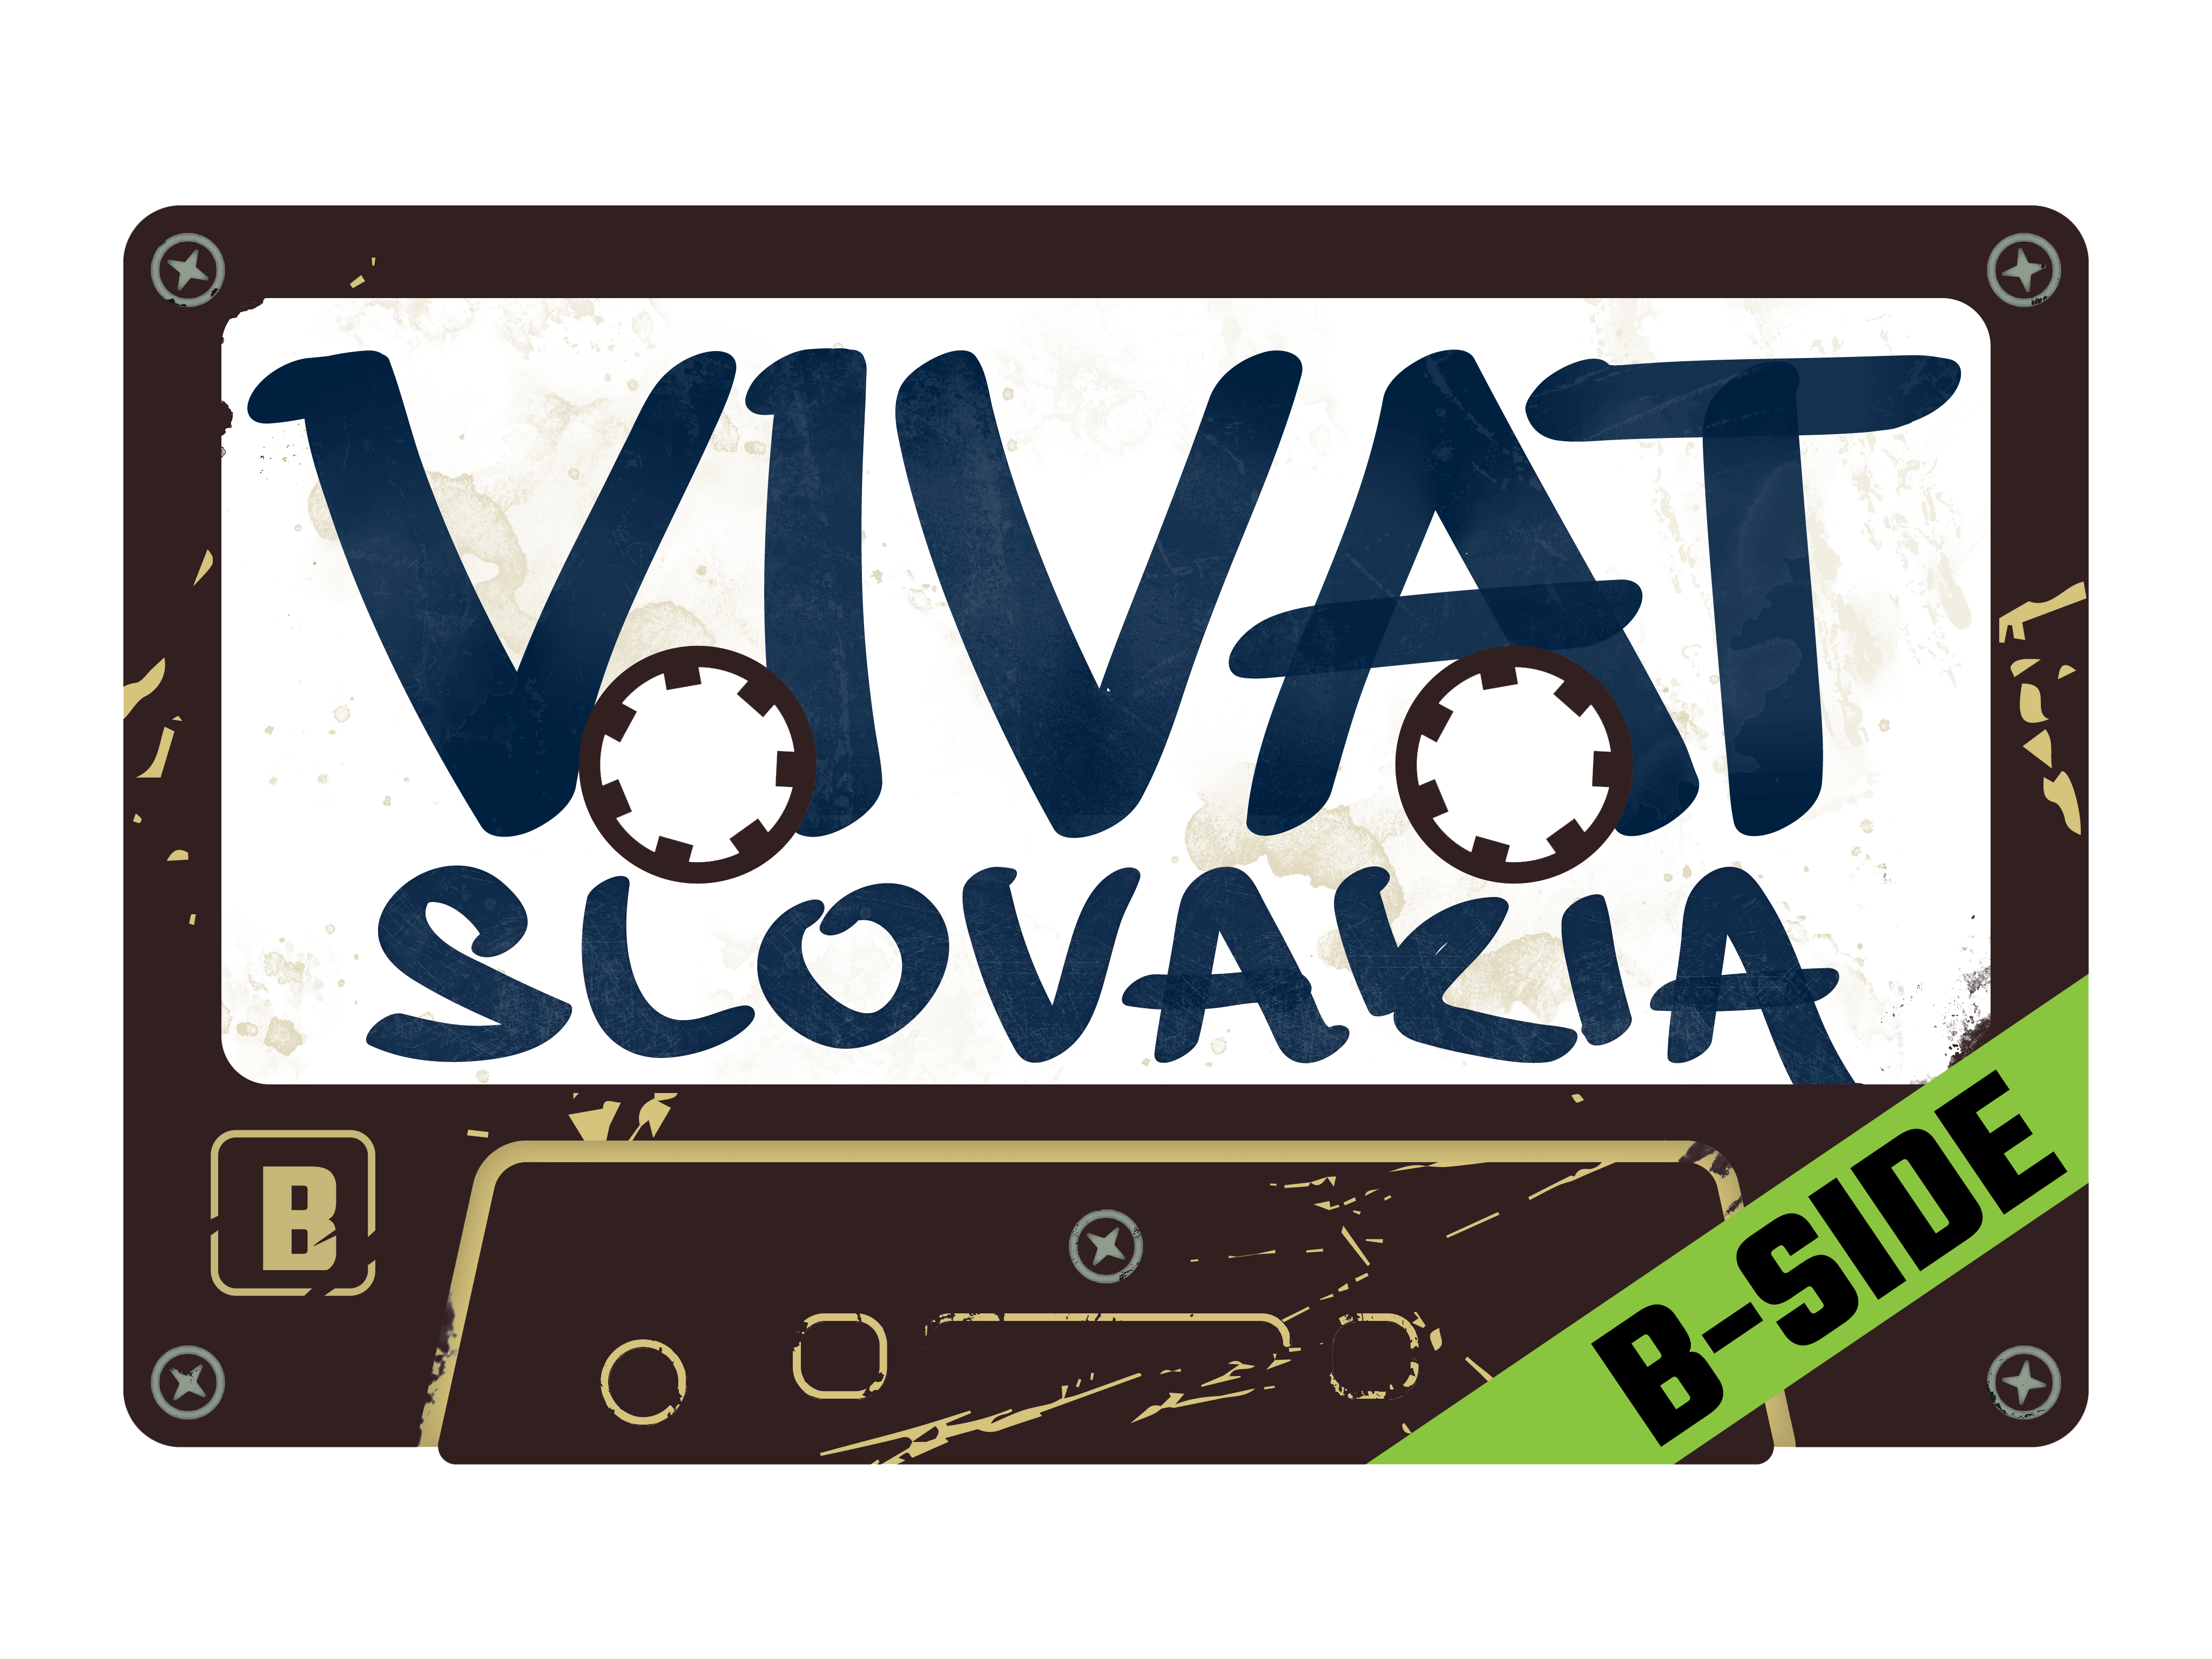 Vivat Slovakia B-side logo